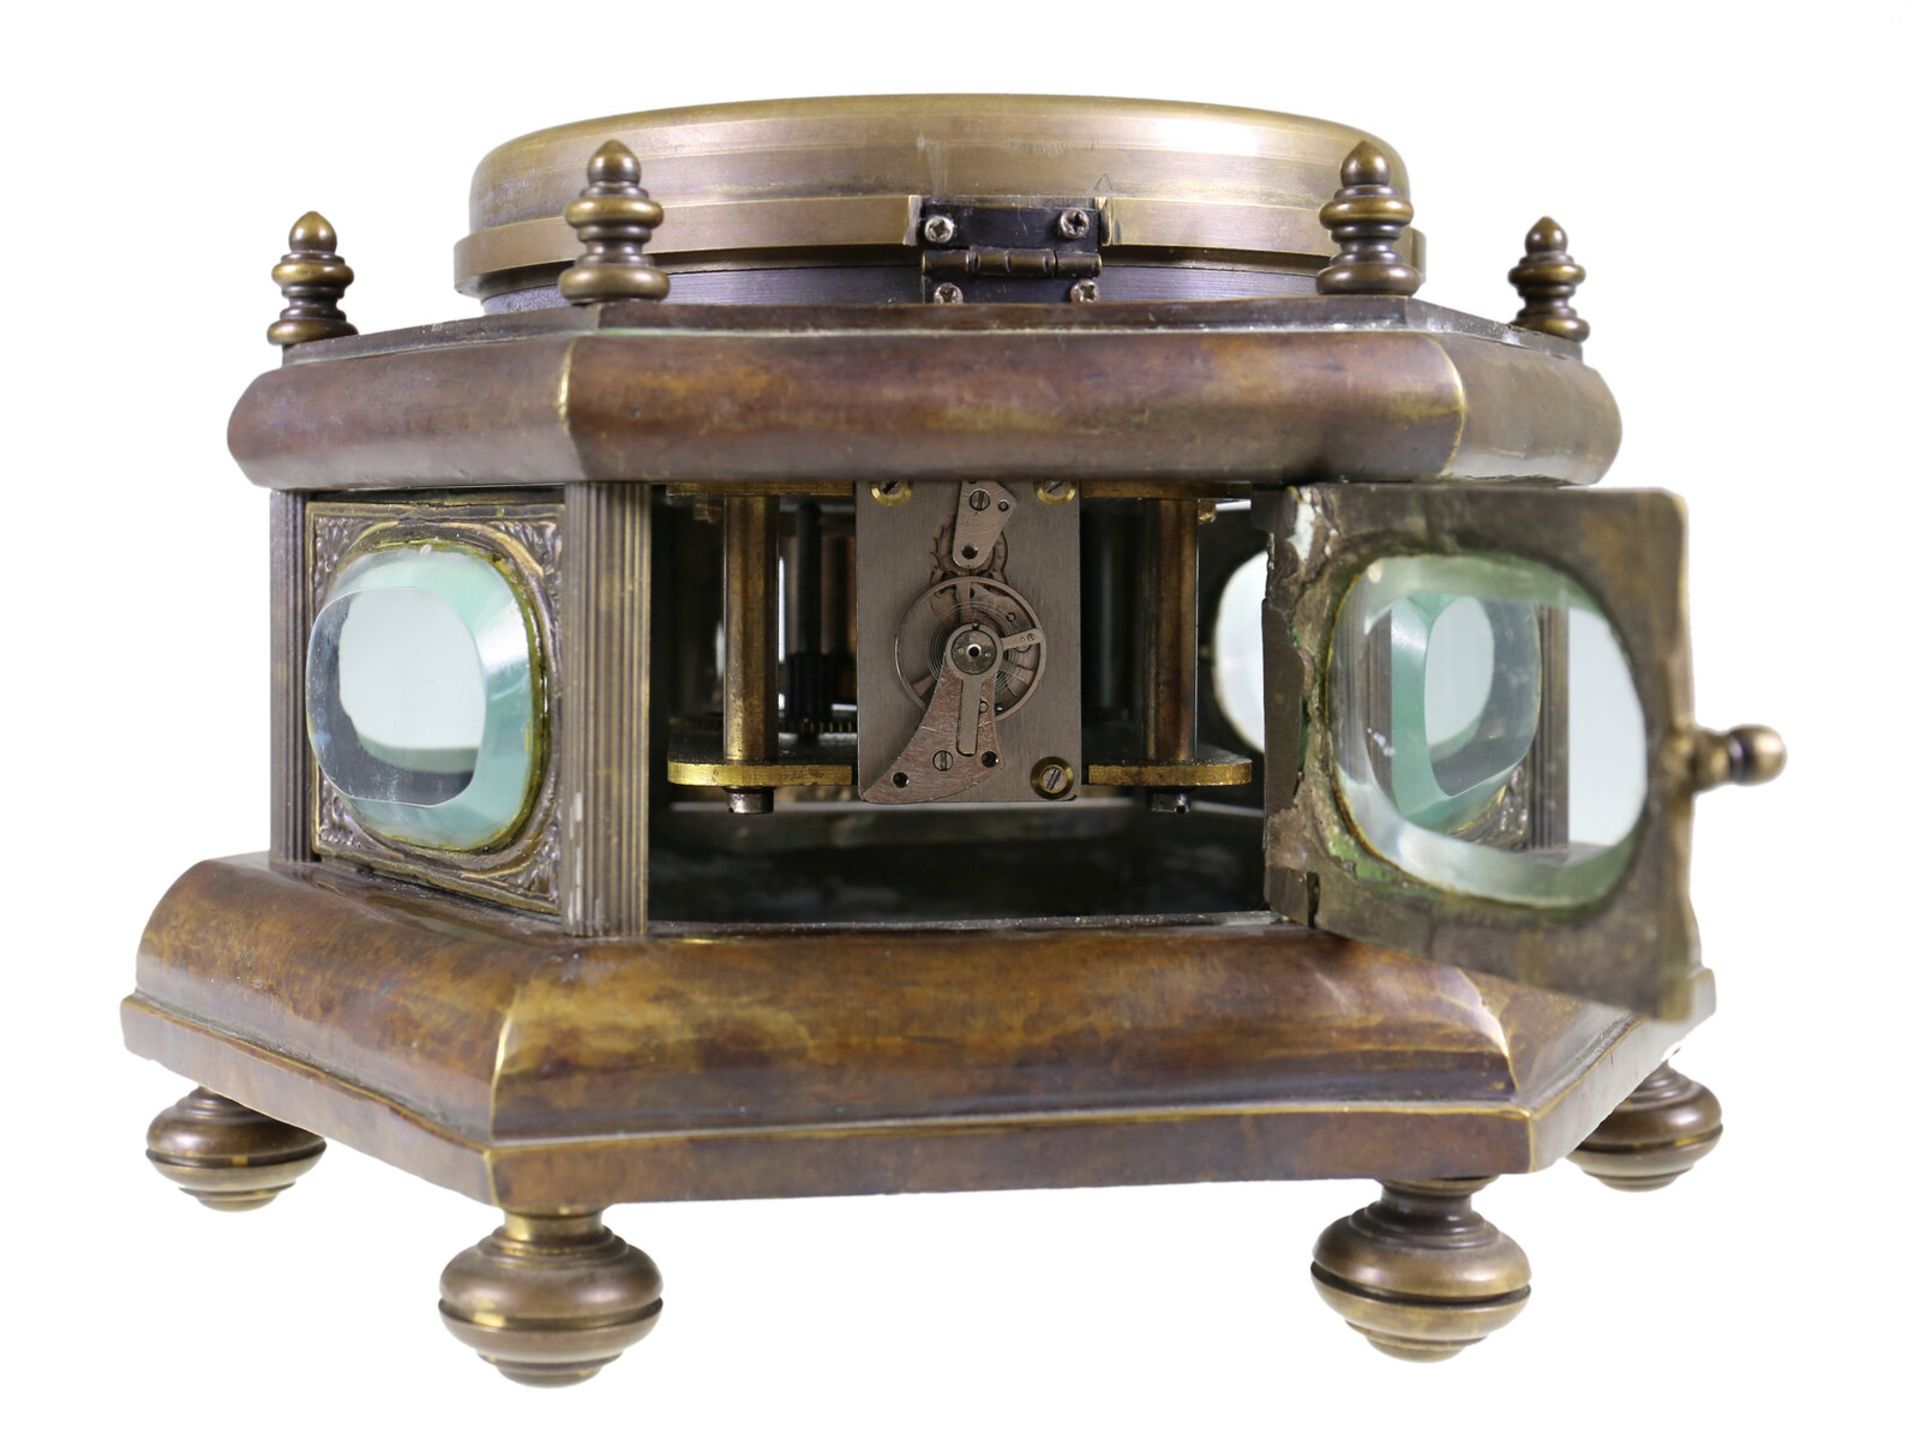 Tischuhr: ungewöhnliche 6-eckige Horizontal-Tischuhr, um 1900 - Bild 3 aus 4